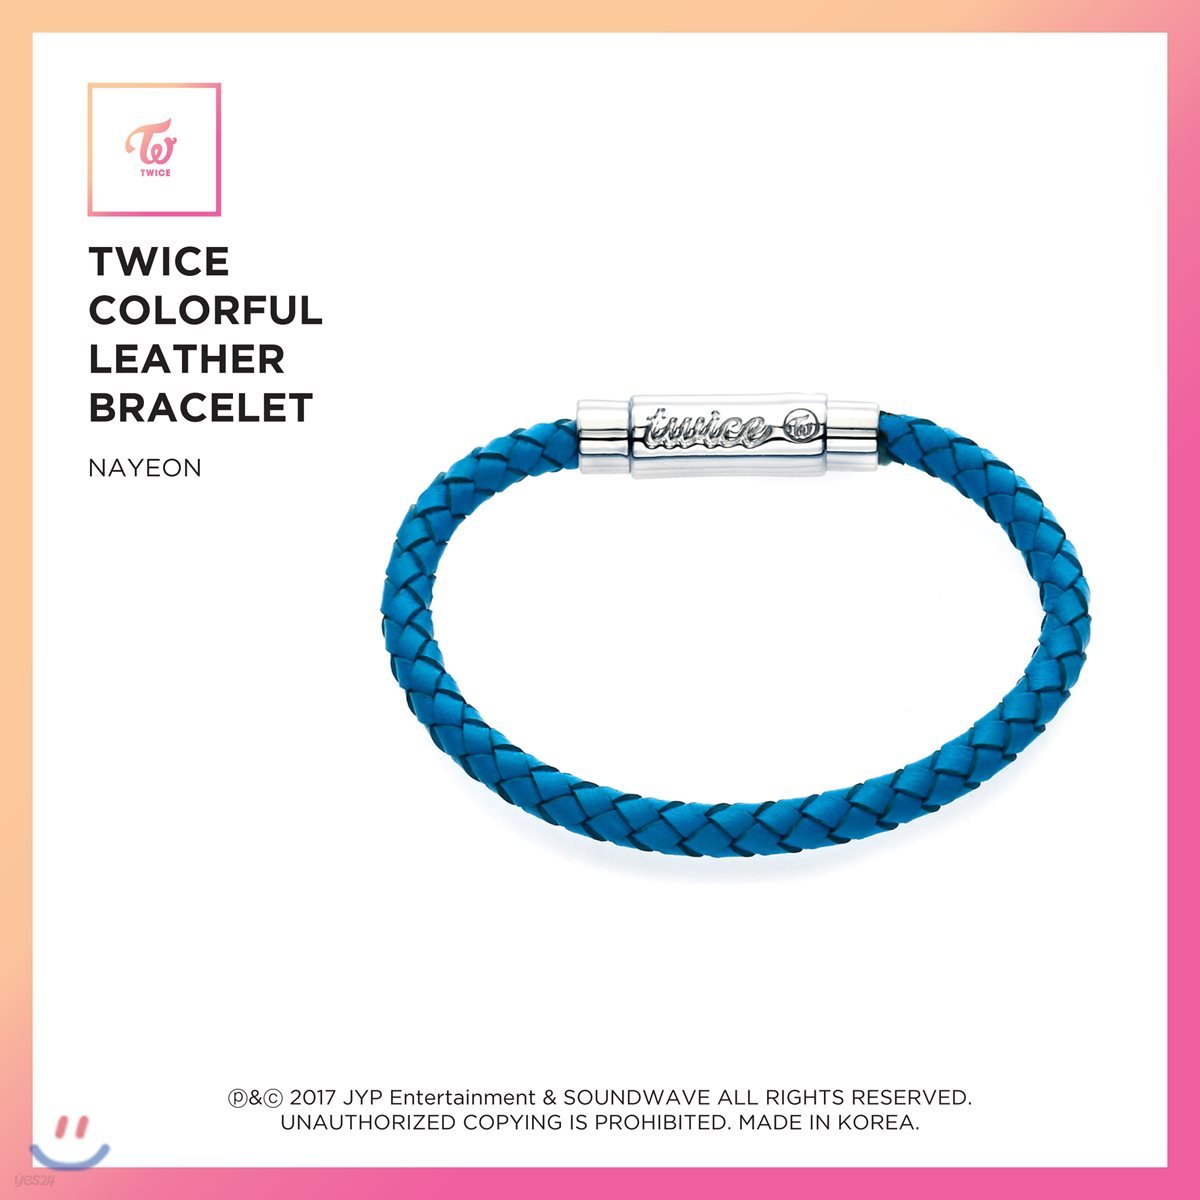 트와이스 (TWICE) - TWICE Colorful Leather Bracelet [Nayeon]